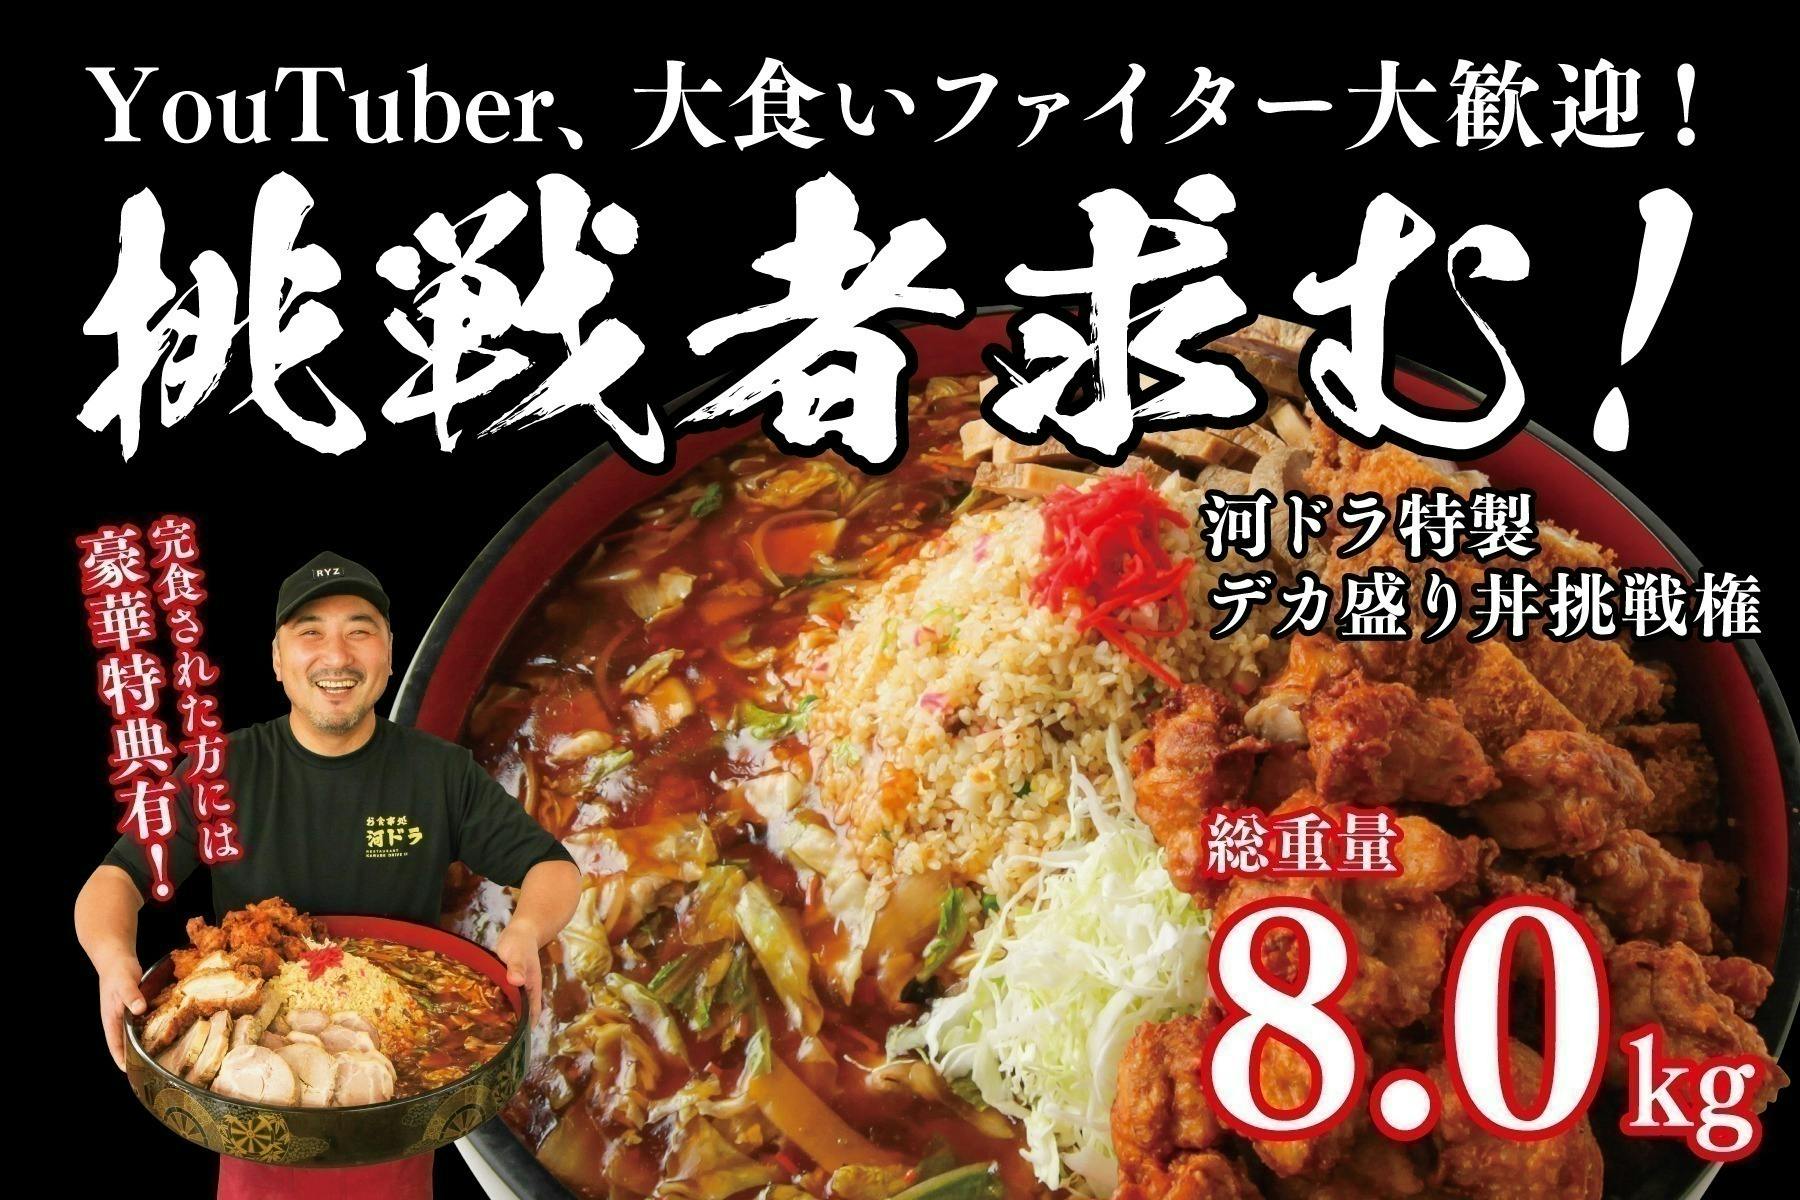 日本中に「河ドラ」の味を届けたい──。秋田の超大衆食堂 河辺ドライブインの挑戦！